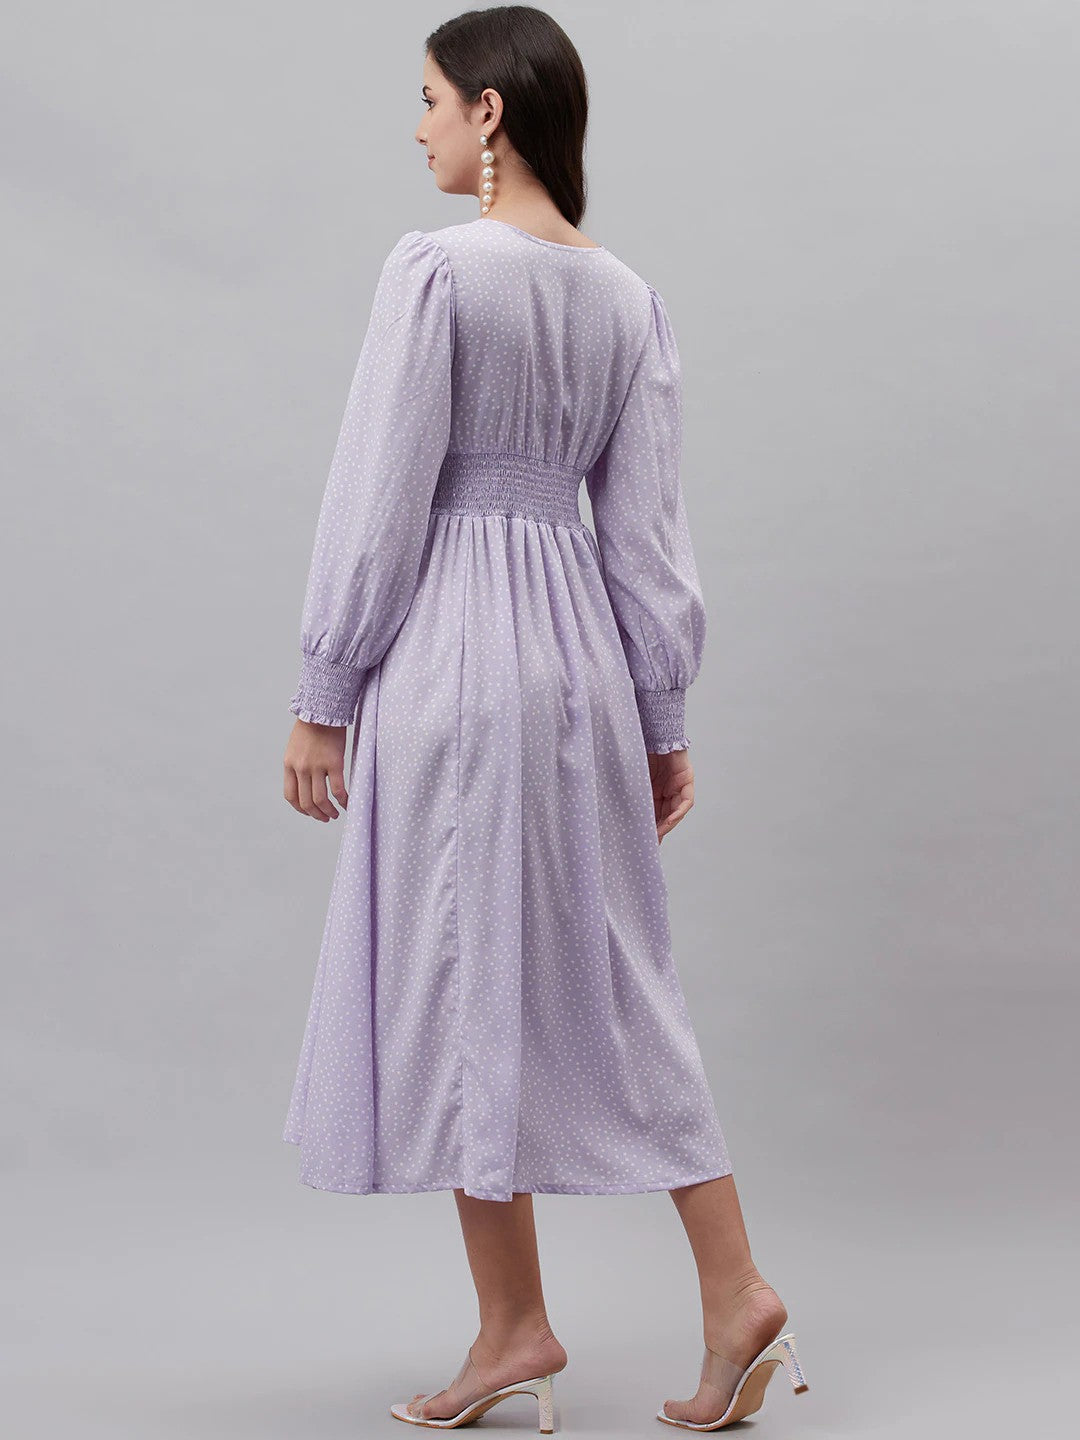 plusS Lavender  White Polka Dots Print A-Line Midi Dress